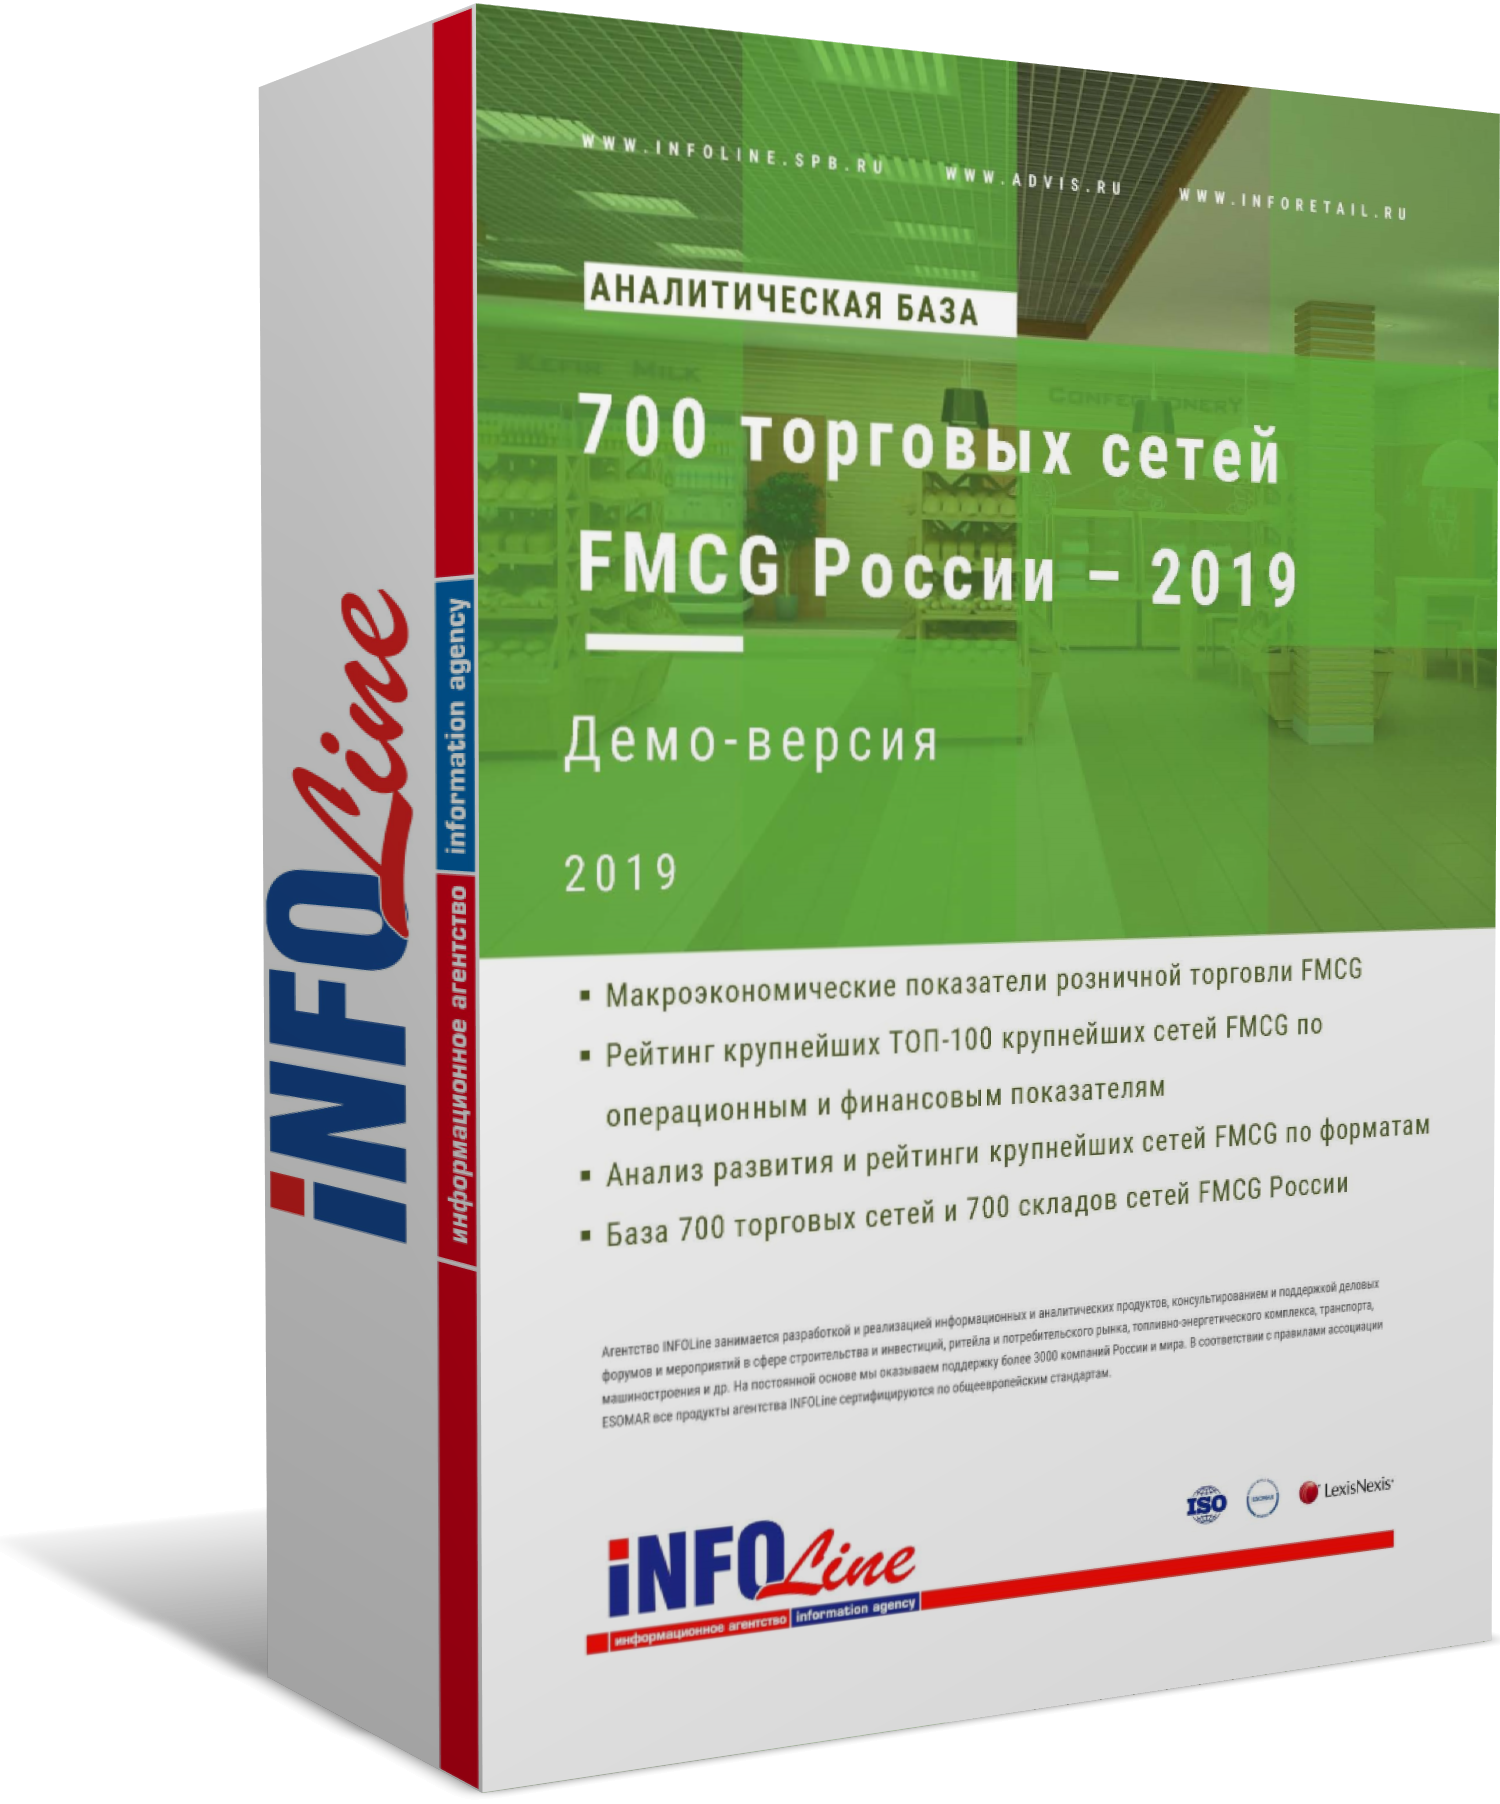 Аналитическая база "700 торговых сетей FMCG России – 2019". Расширенная версия